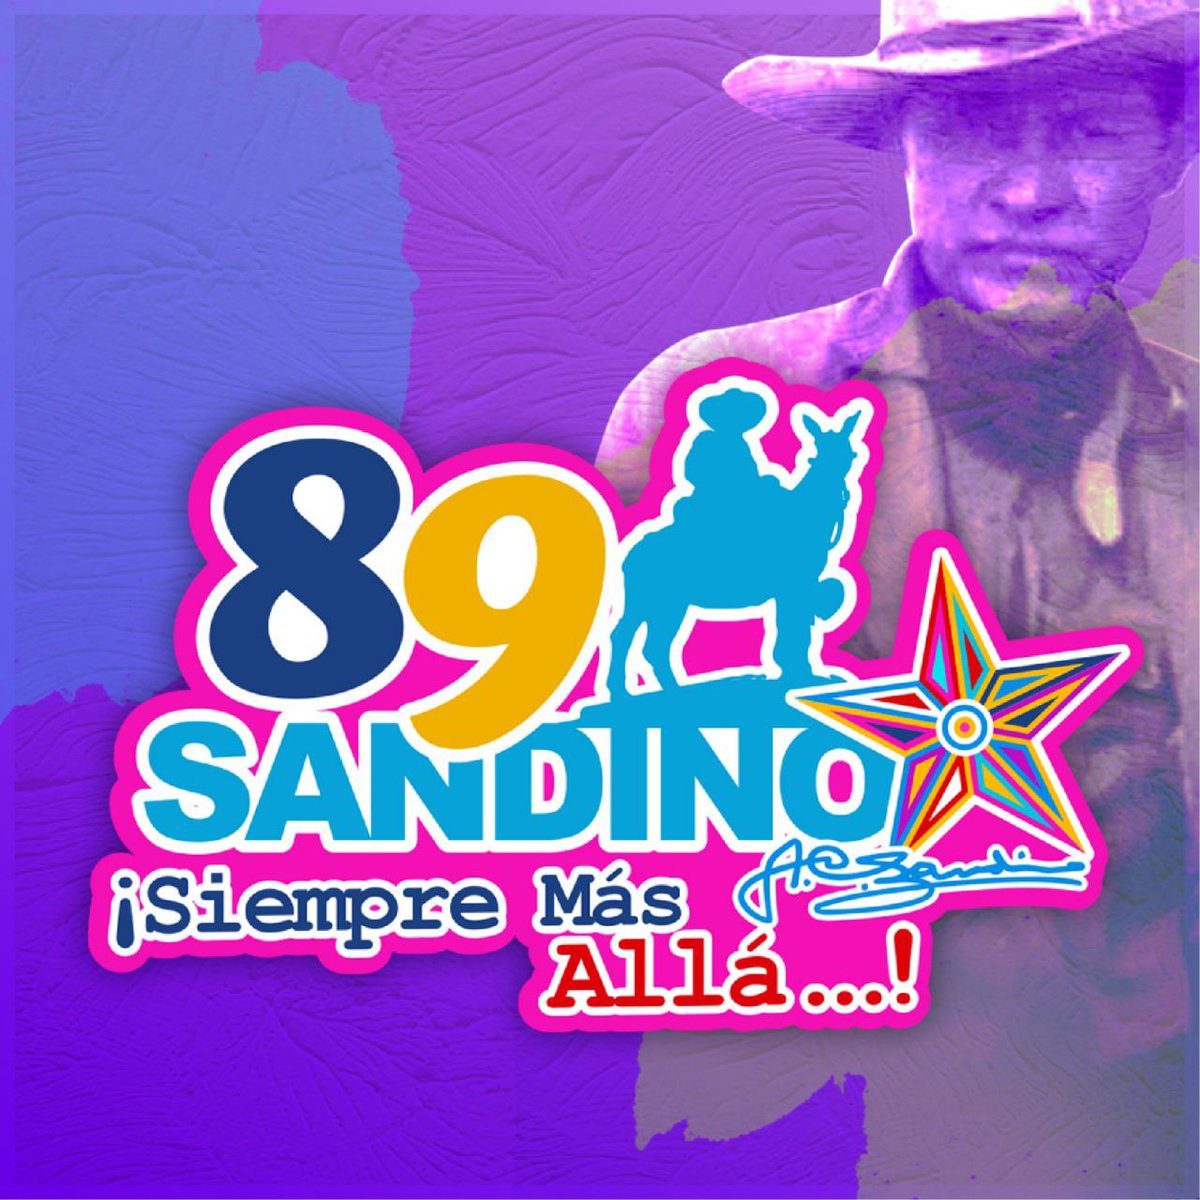 #MasVictoriasPuebloPresidente nuestro General Sandino más allá